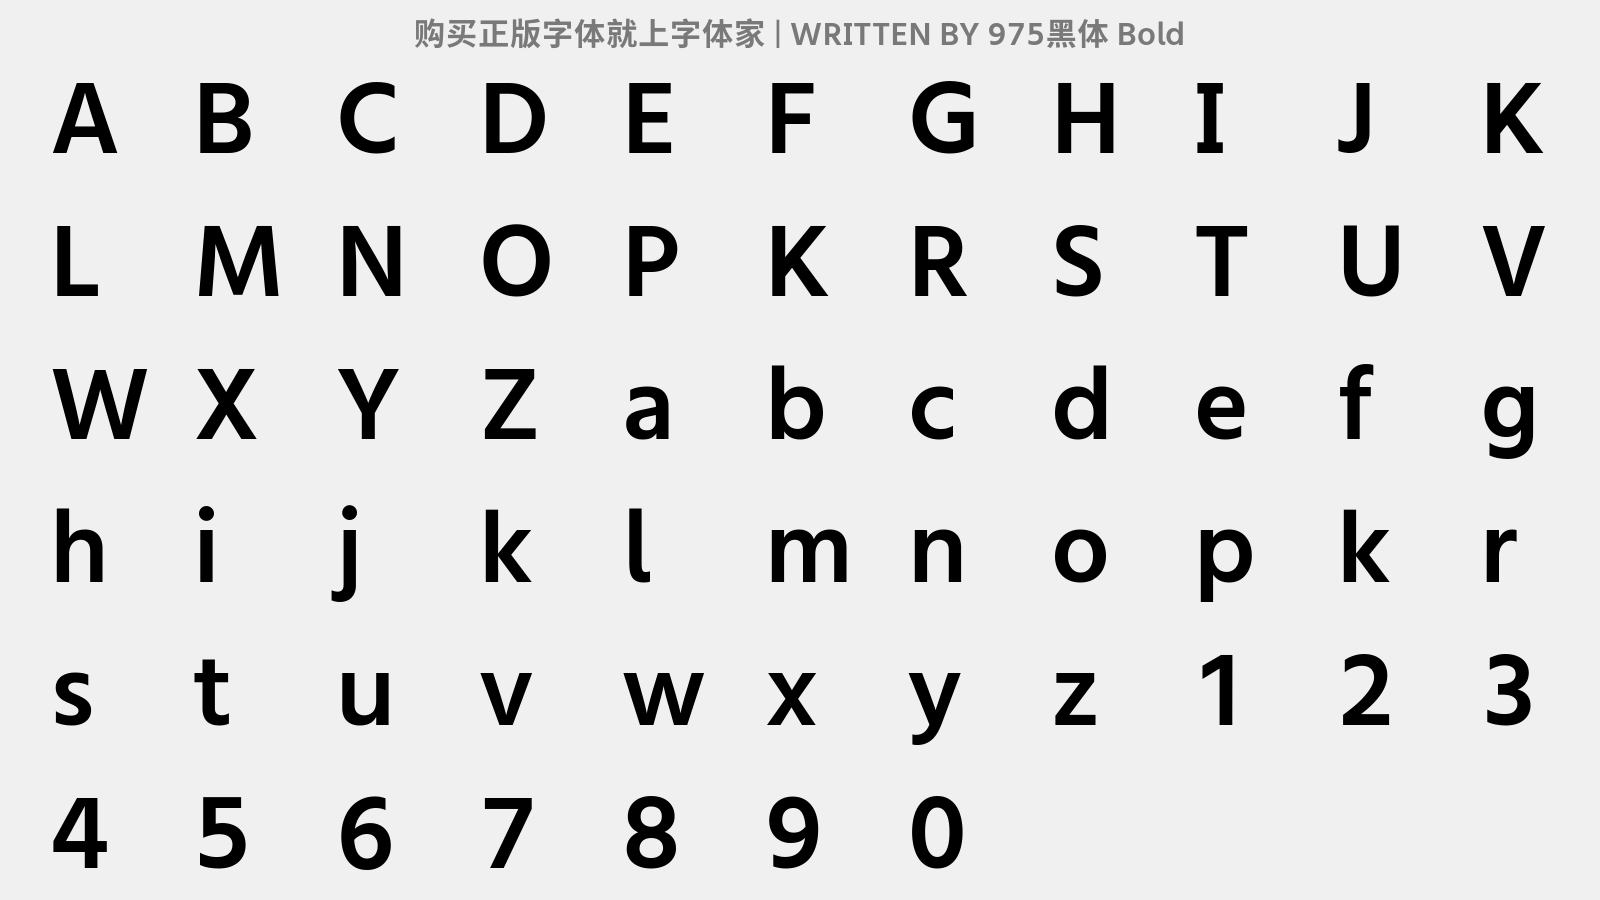 975黑体 Bold - 大写字母/小写字母/数字